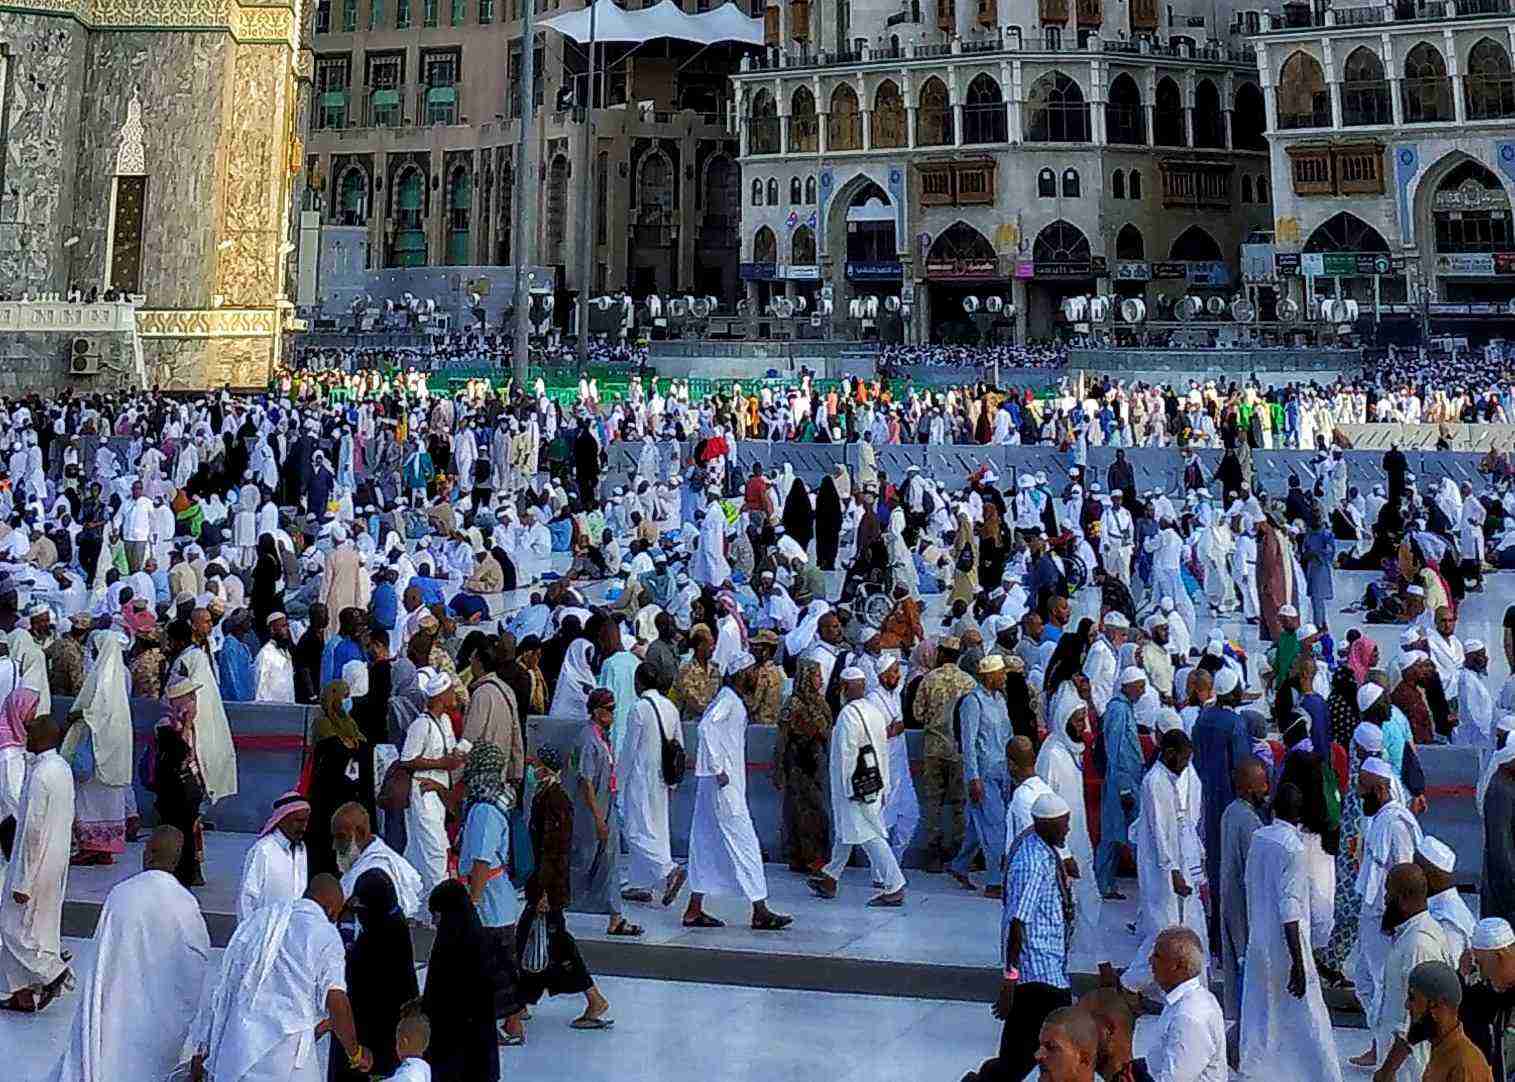 Saudi Arabia Religious Reforms - A new start 